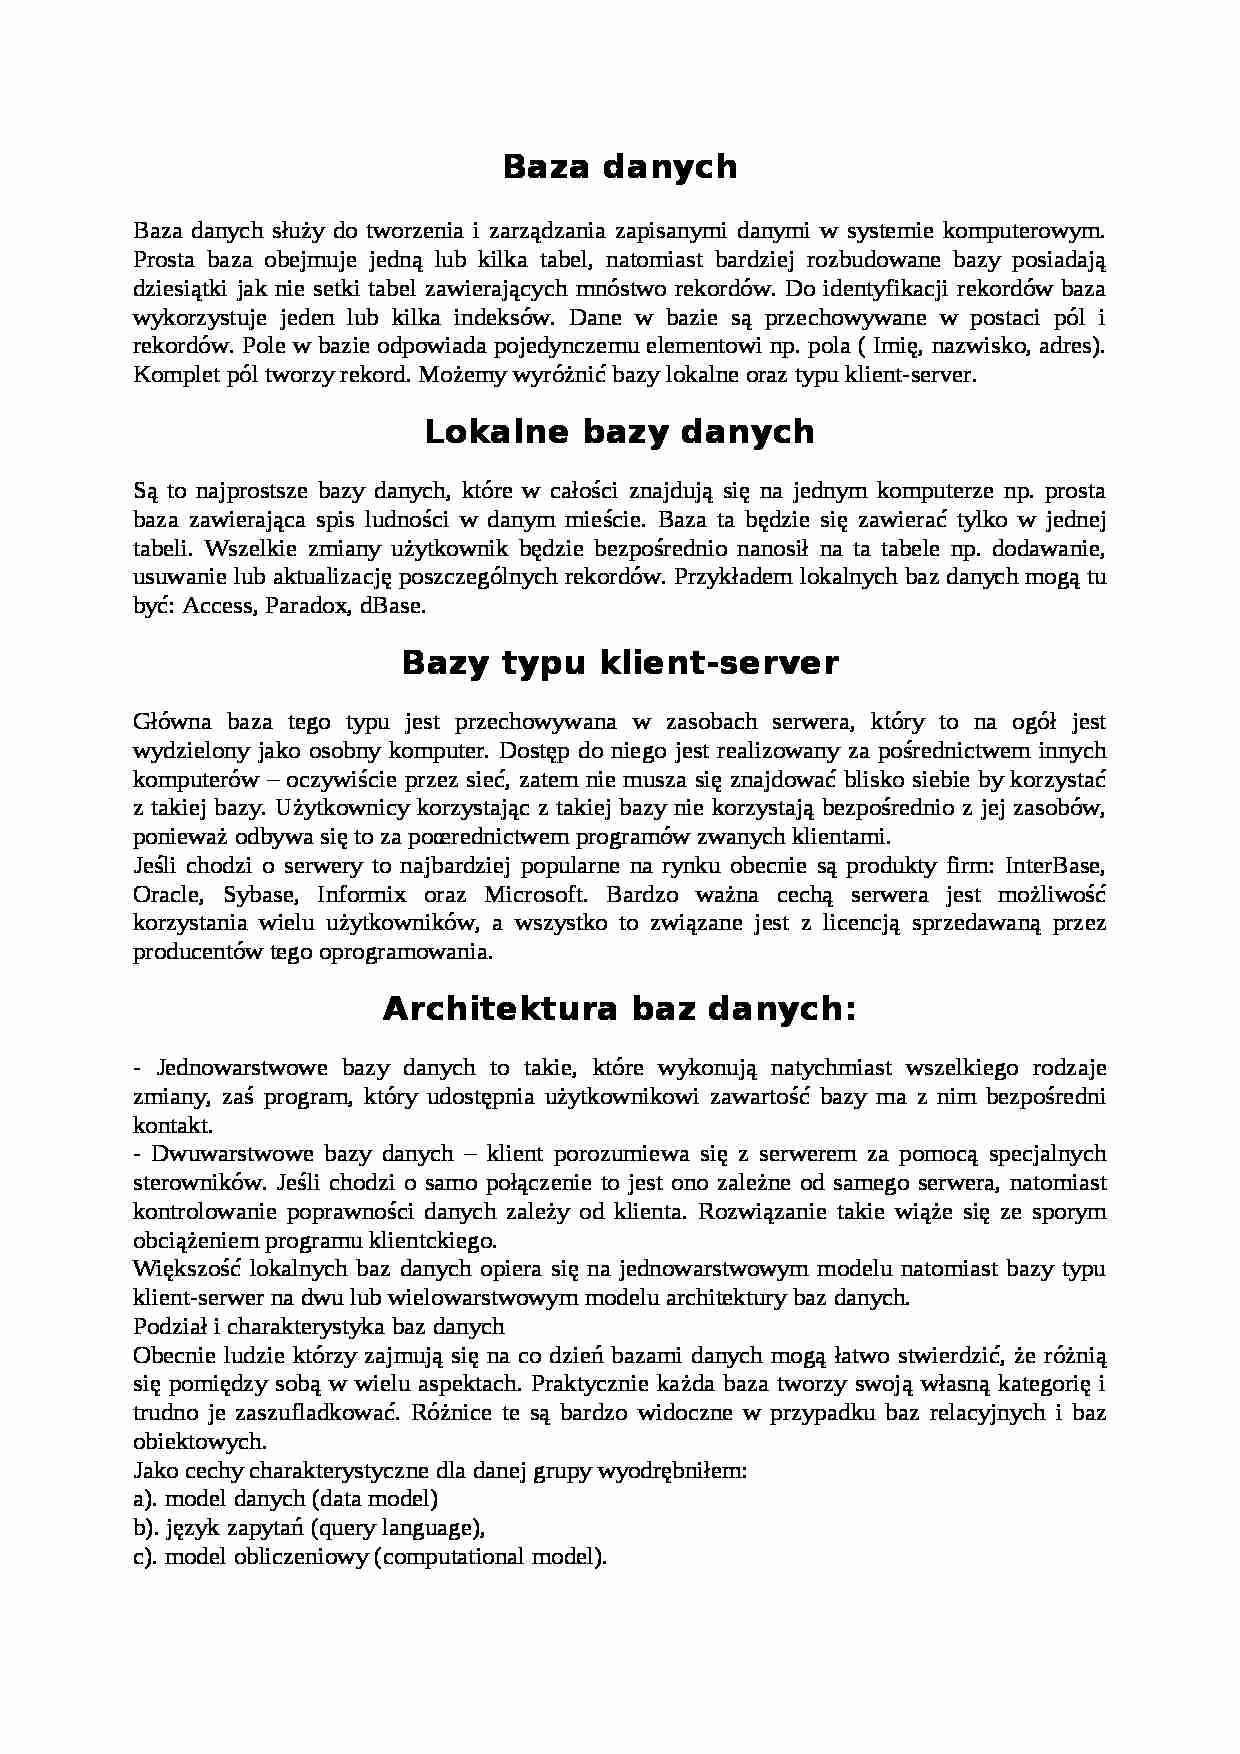 Baza danych - zarządzanie w systemie komputerowym - strona 1